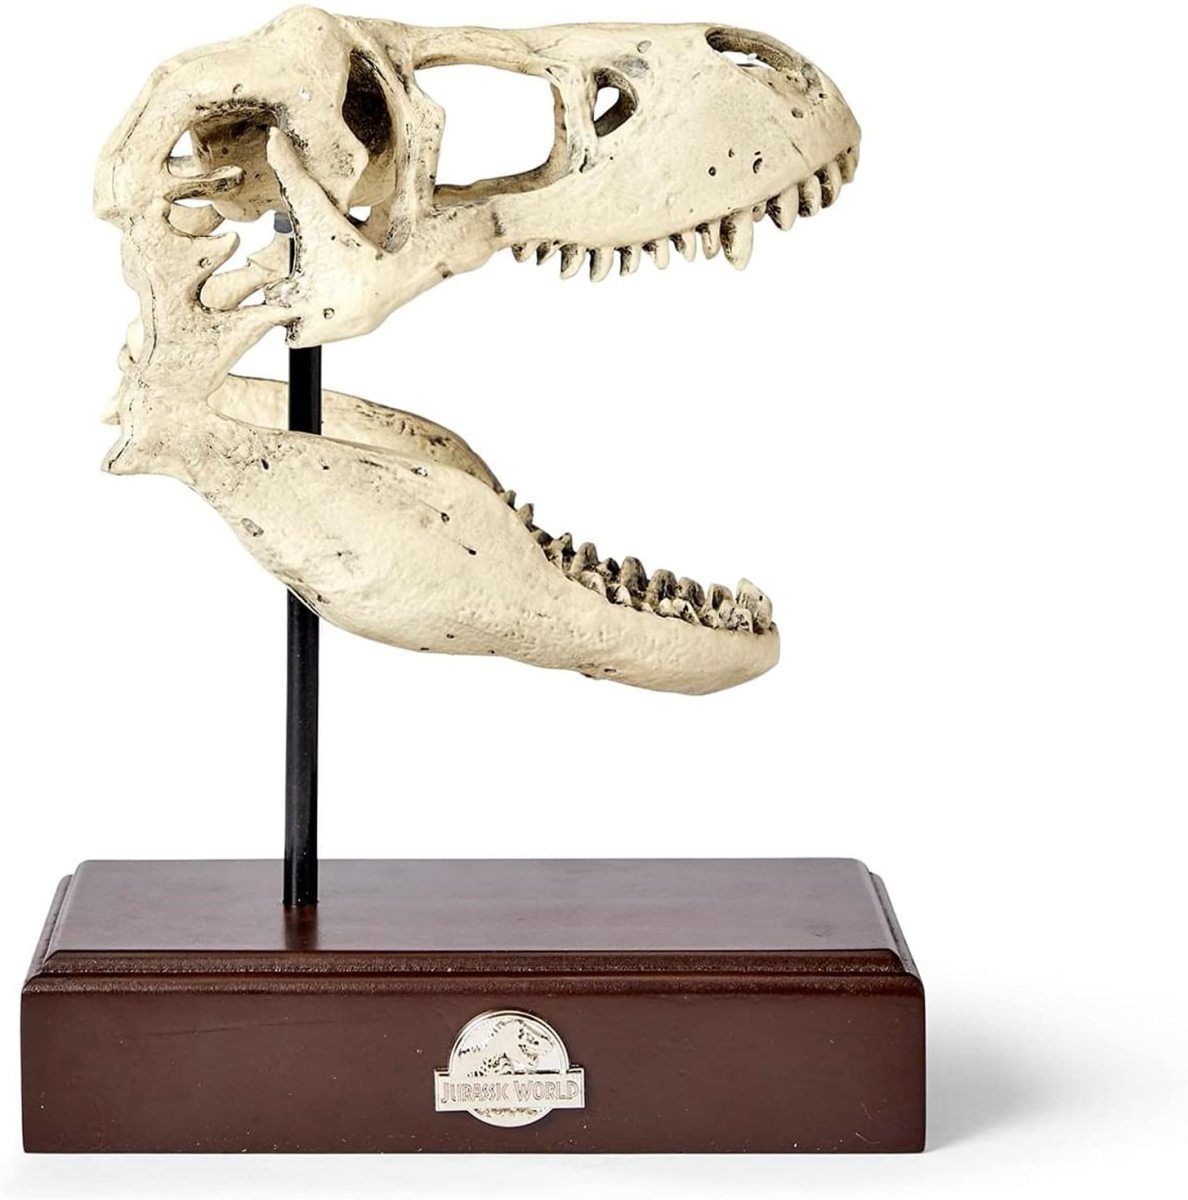 ティラノサウルス 頭蓋骨 レプリカ オブジェ 化石